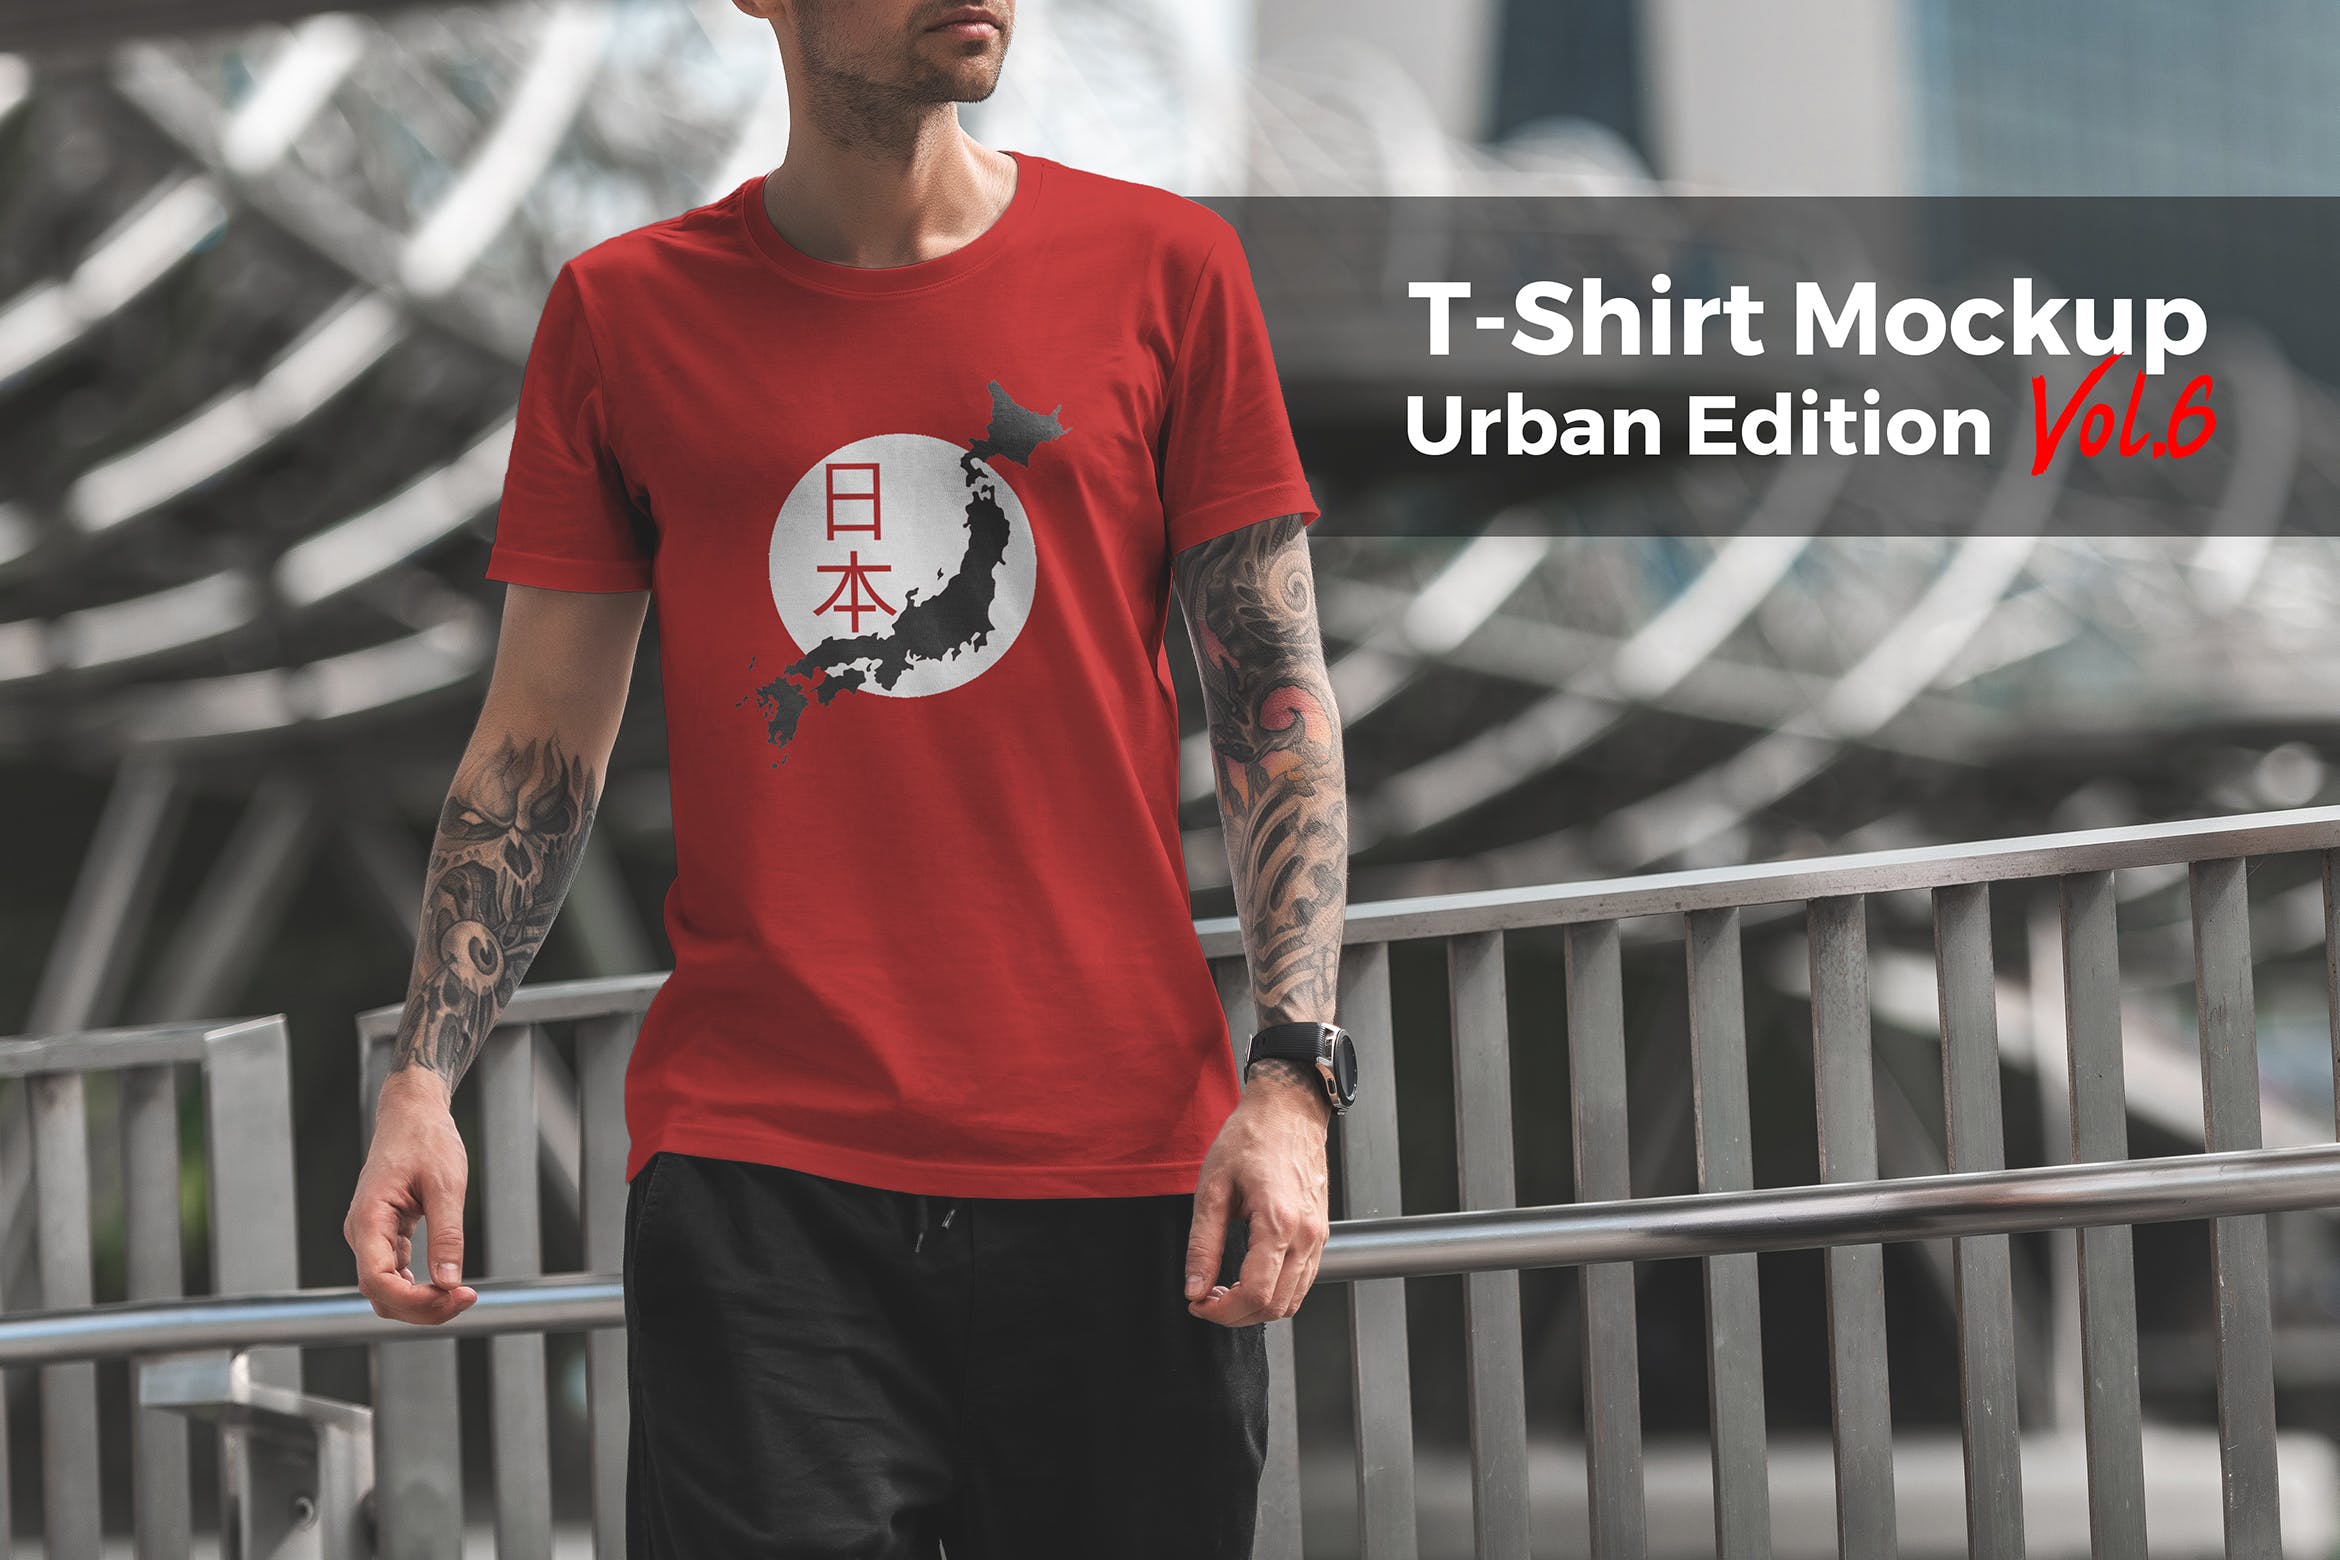 城市系列-印花T恤产品展示样机非凡图库精选模板v6 T-Shirt Mockup Urban Edition Vol. 6插图